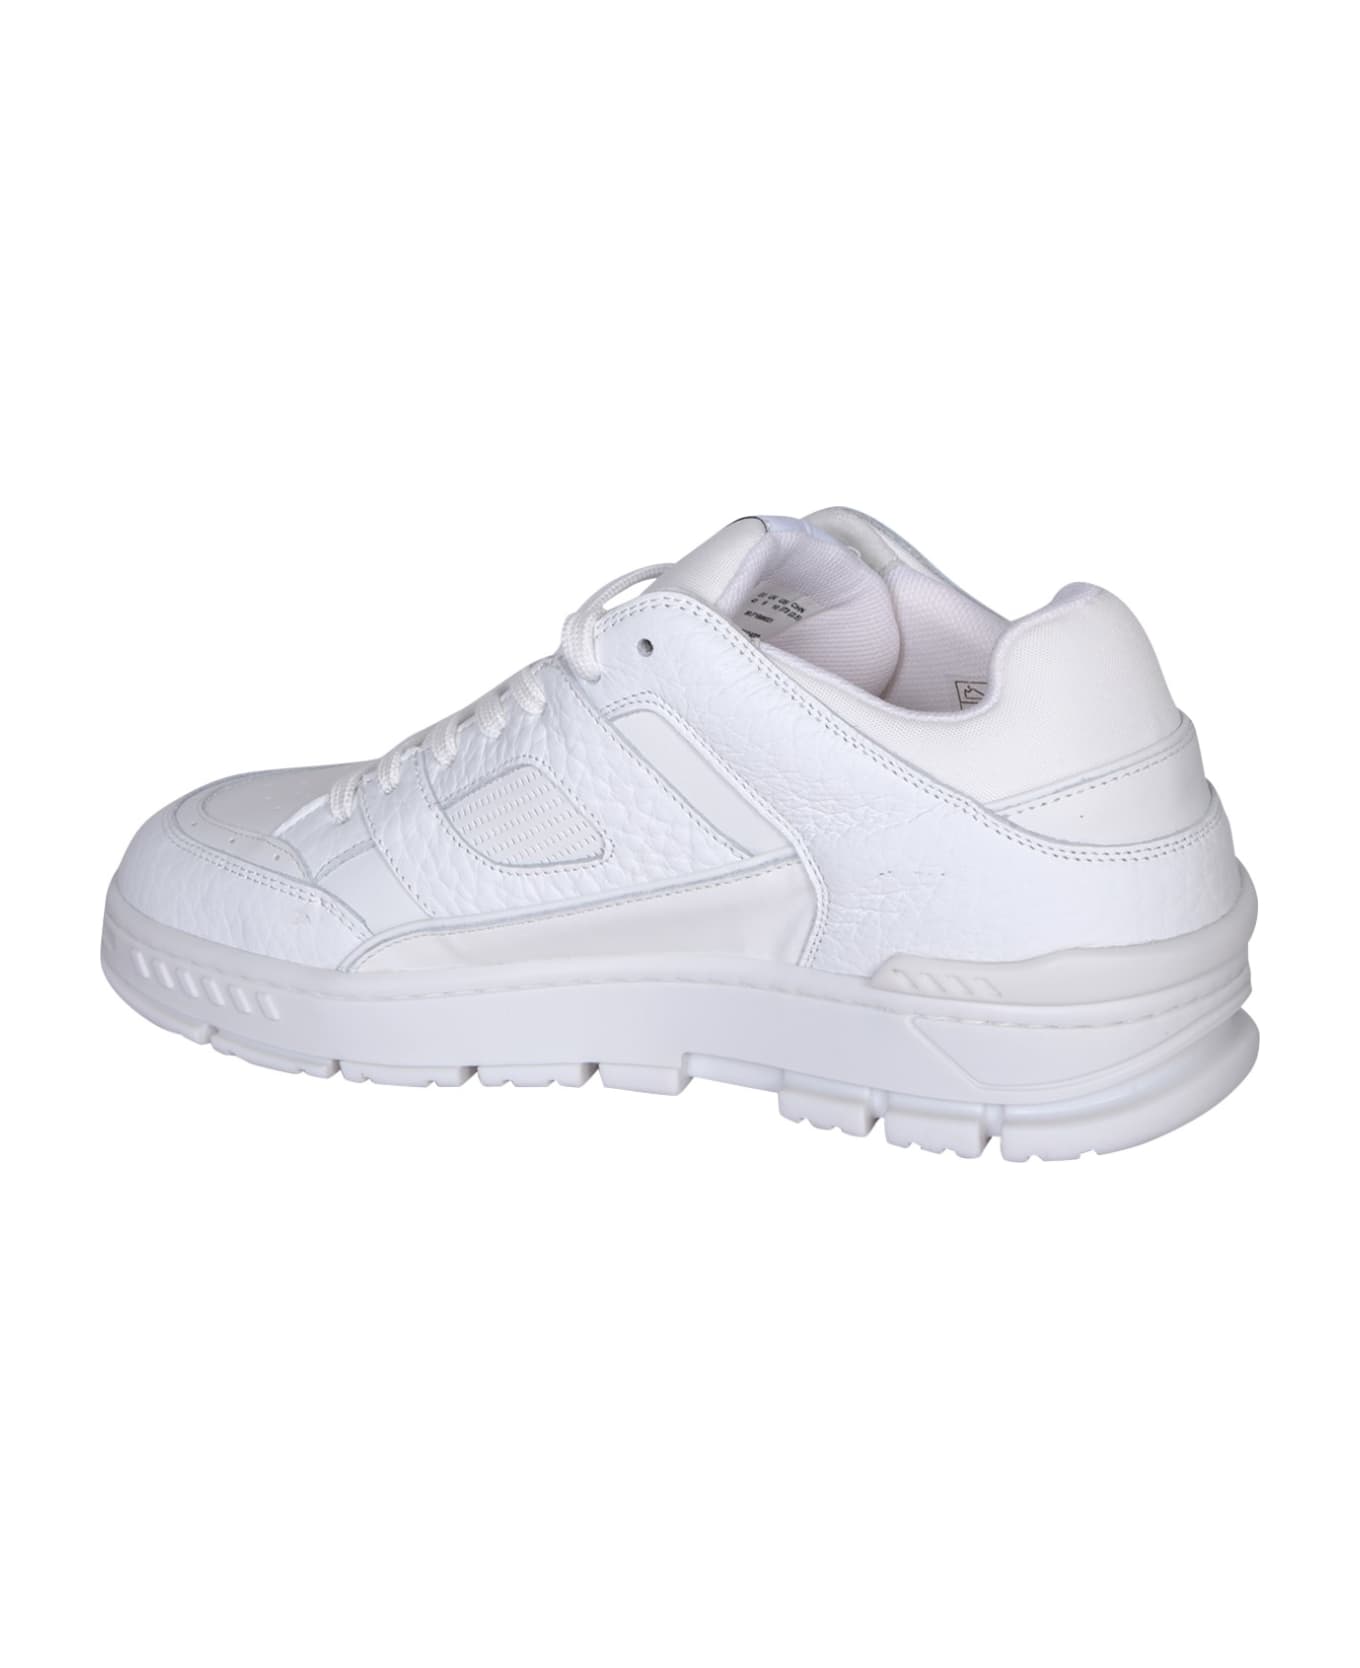 Axel Arigato Area Lo White Sneakers - White